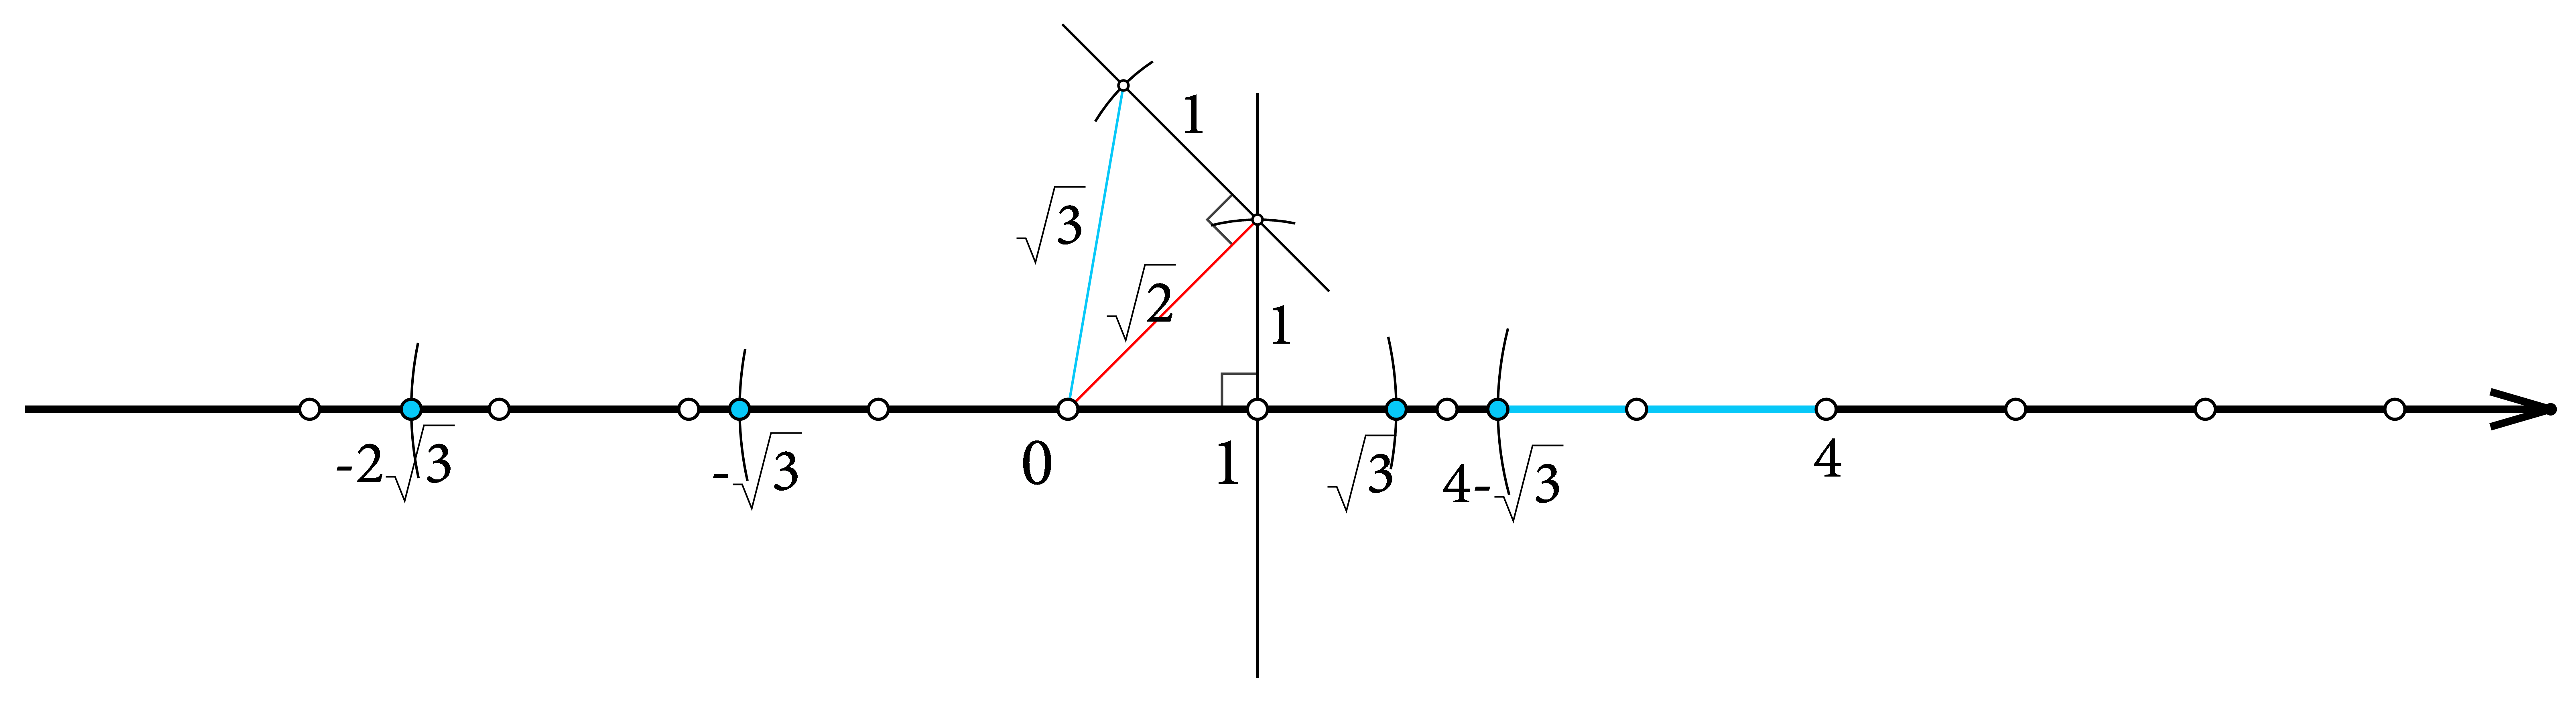 Slika prikazuje postupak konstrukcije točaka zadanih u zadatku prema opisima iz rješenja.